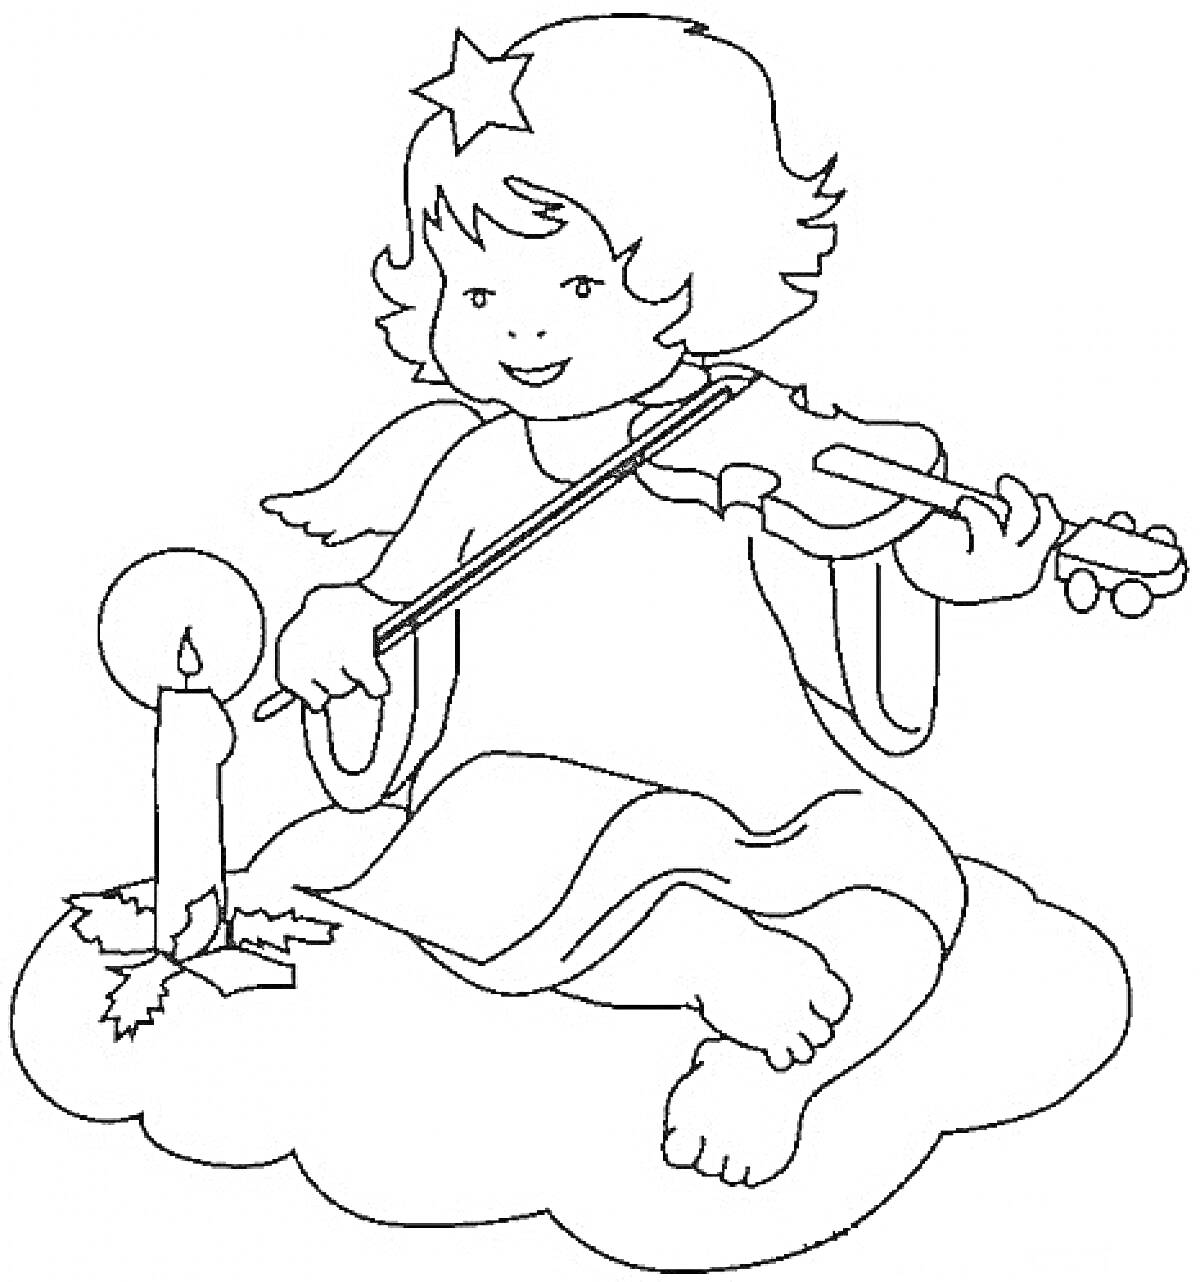 Раскраска Рождественский ангел, сидящий на облаке, играющий на скрипке рядом со свечой